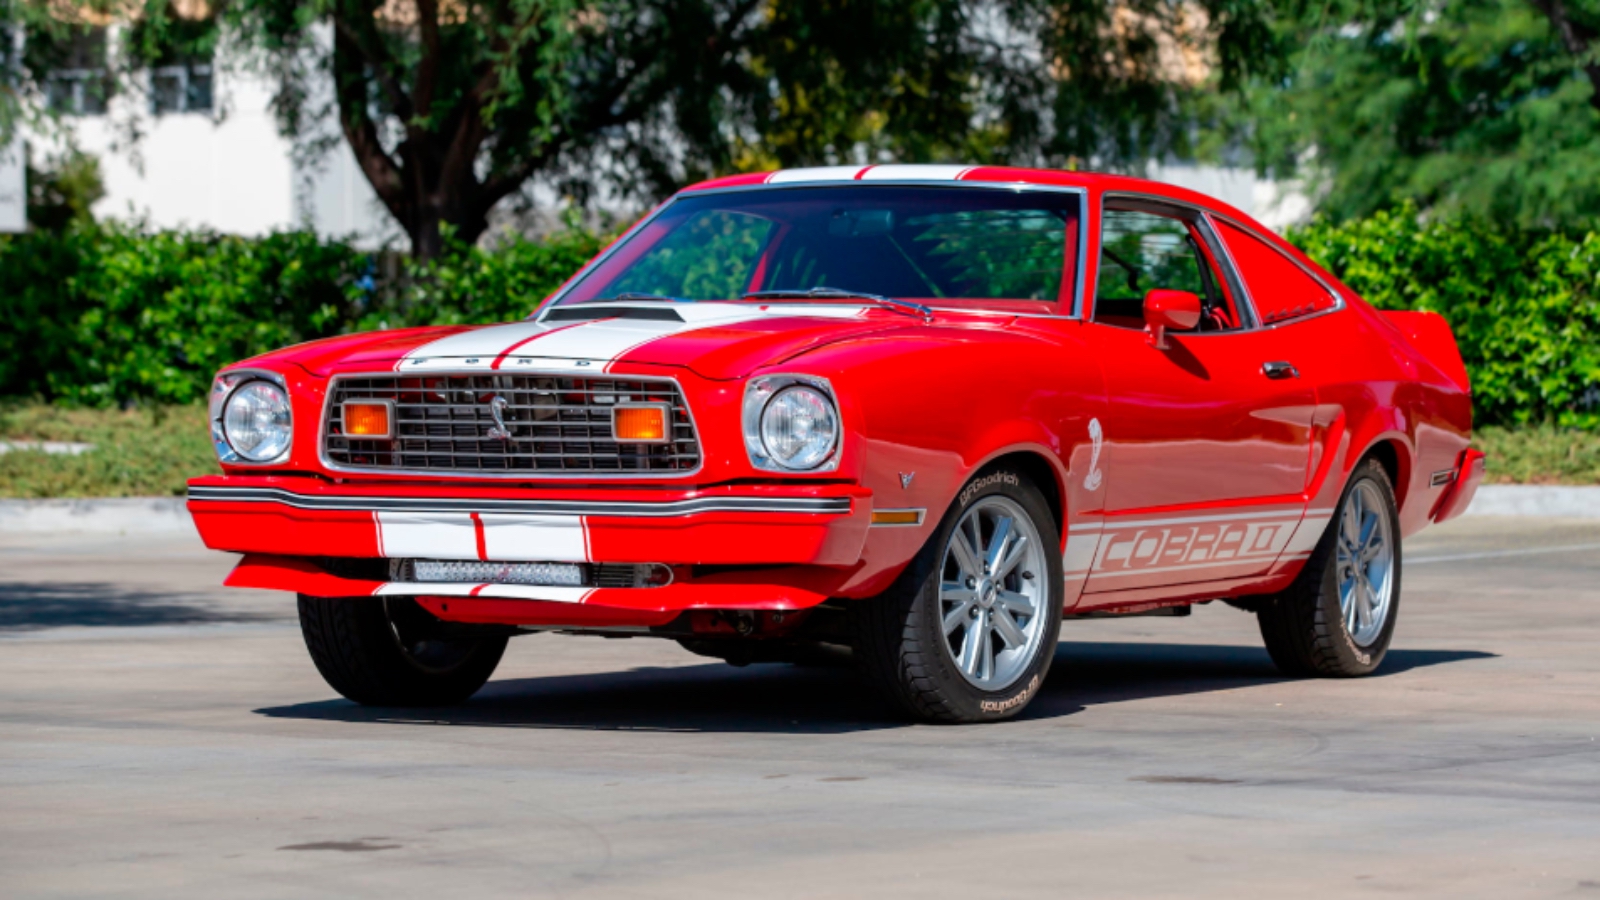 1976 Red Mustang II Cobra II